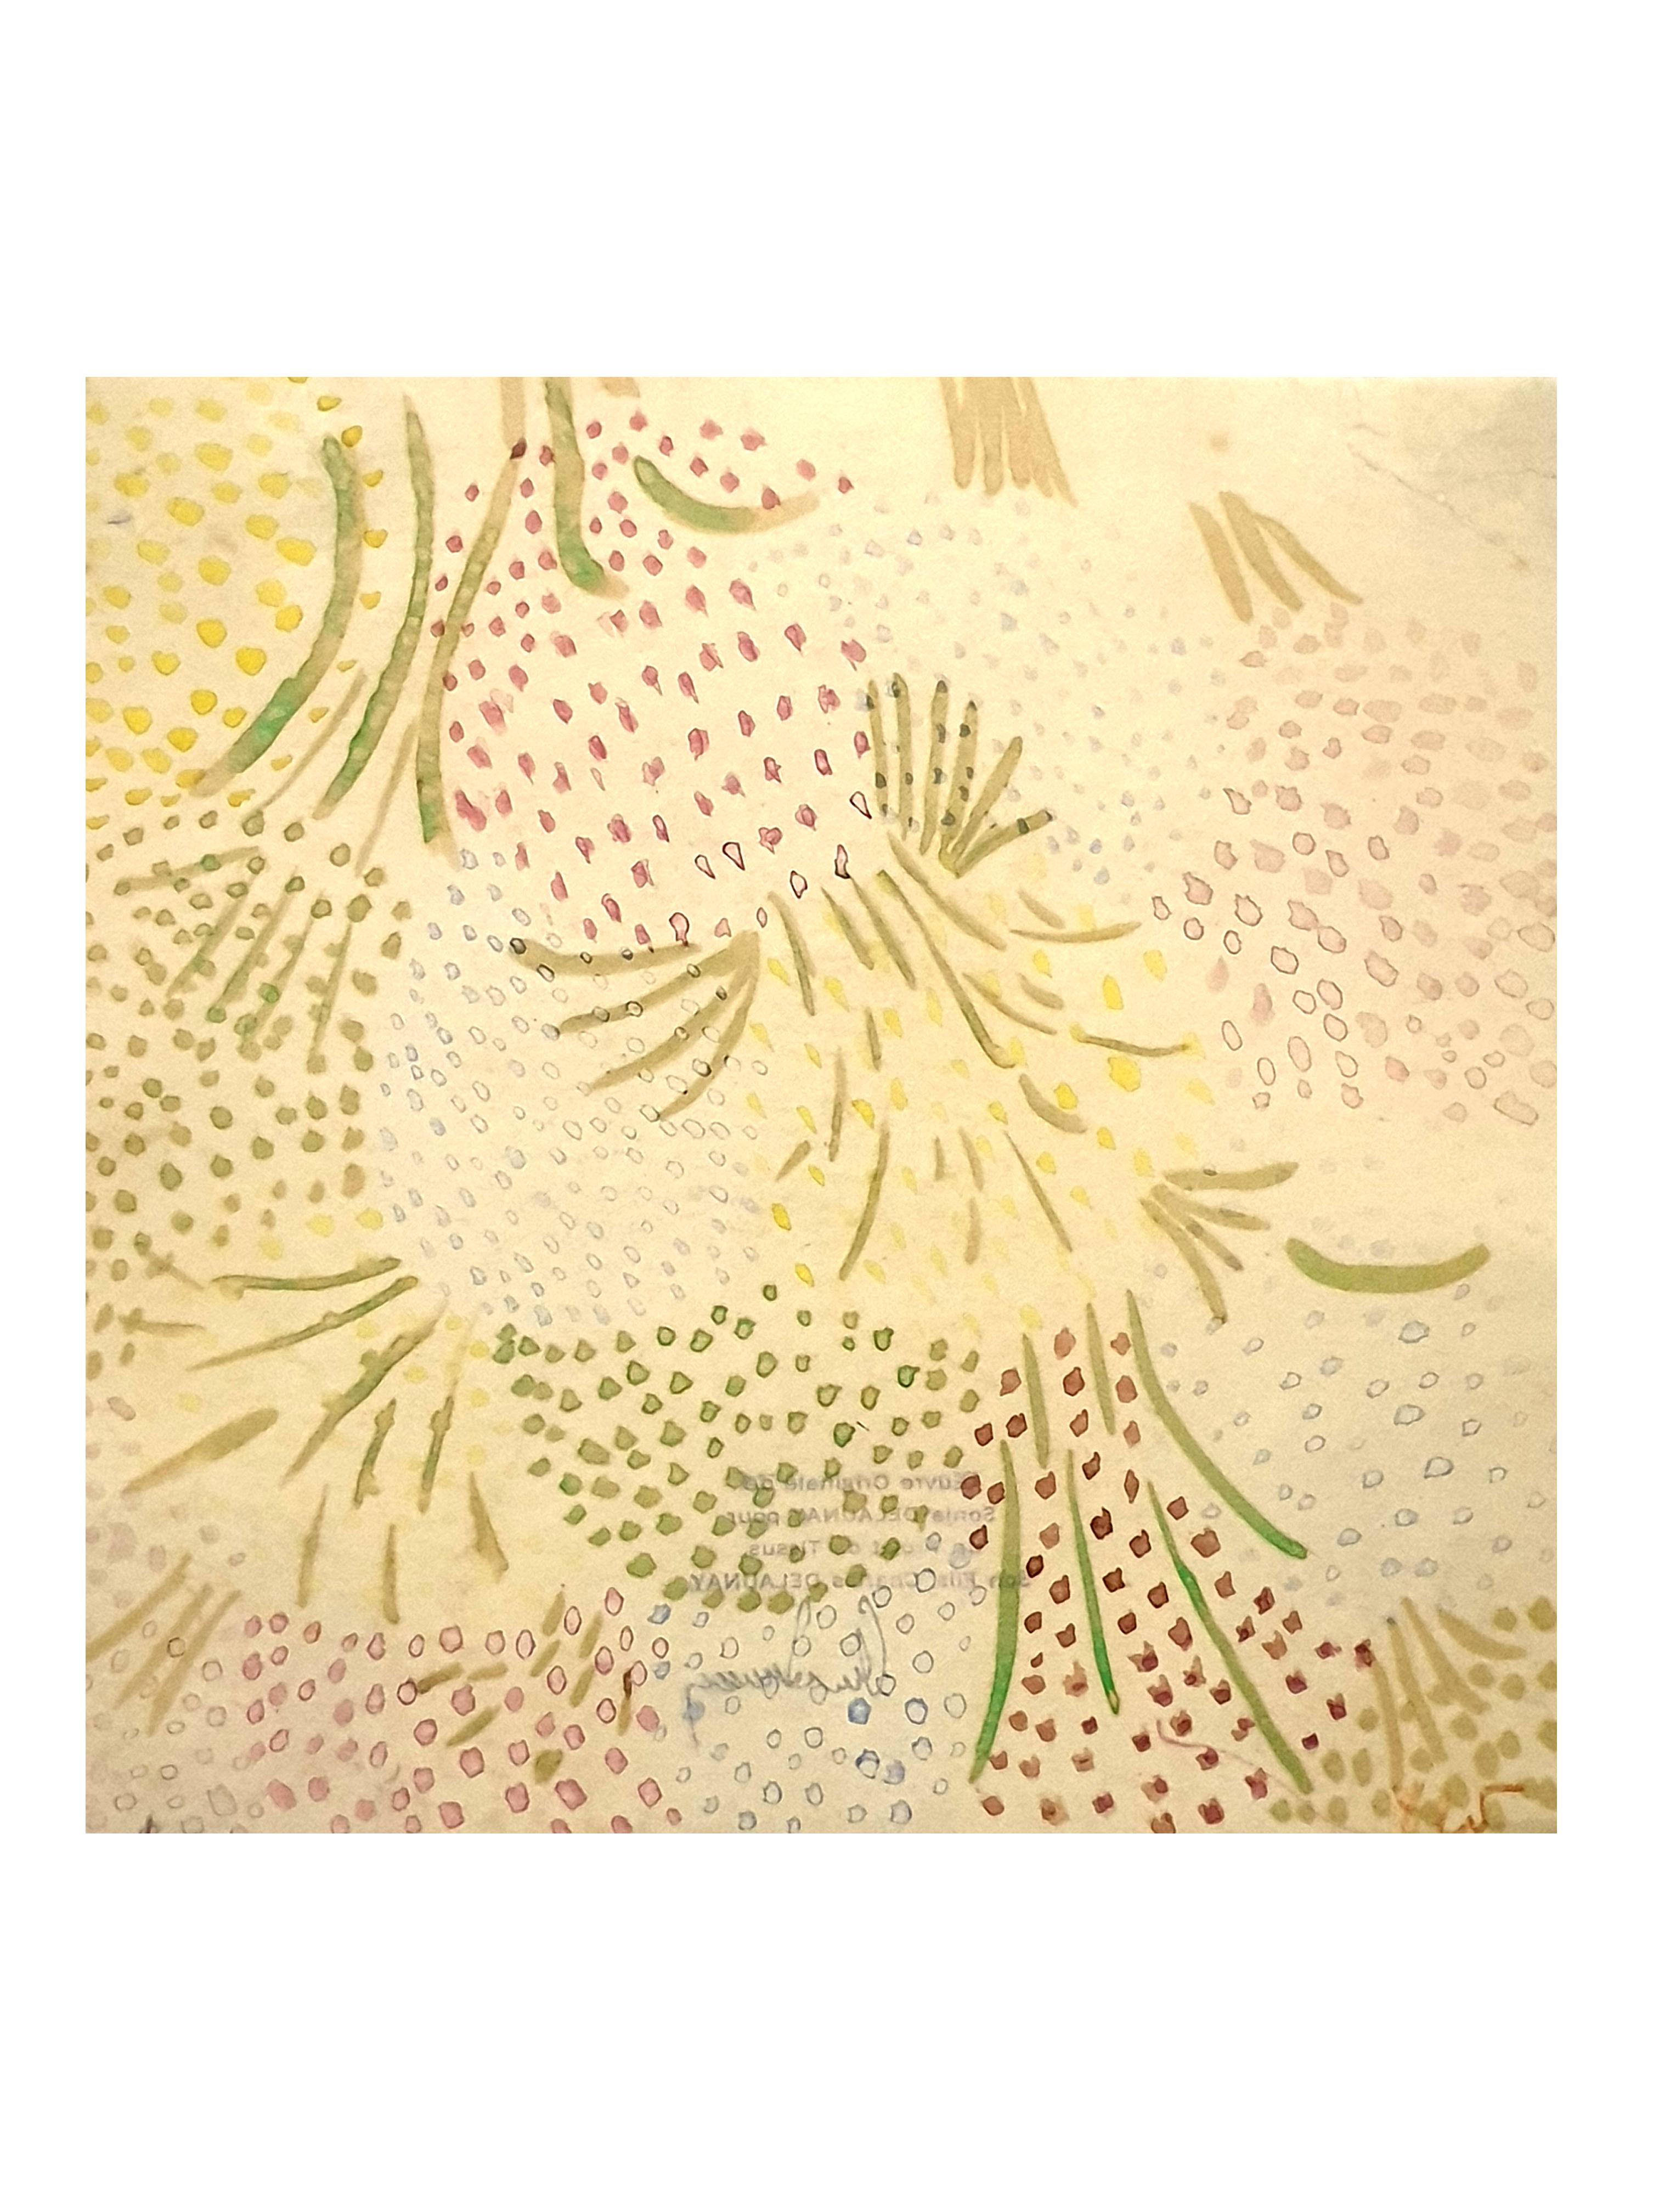 Sonia Delaunay - Aquarelle originale sur papier
Dimensions : 21 x 21 cm.
Authentifié par son fils Charles Delaunay au dos.


Sonia Delaunay était connue pour son utilisation vive de la couleur et ses motifs audacieux et abstraits, brisant les